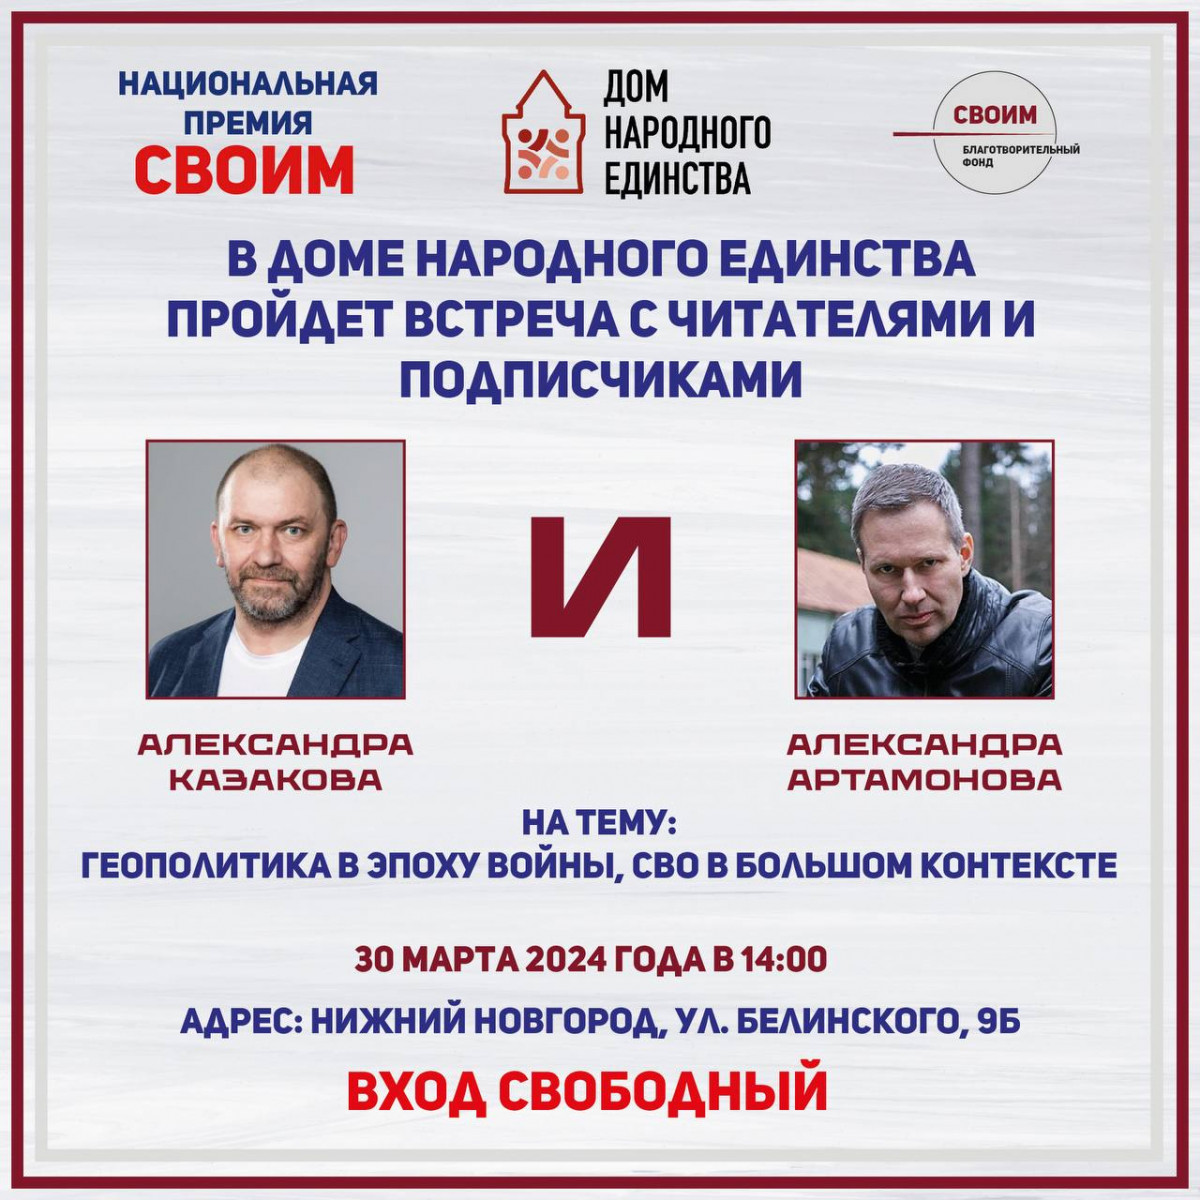 В Нижнем Новгороде пройдет встреча с военным экспертом Александром Артамоновым и политологом Александром Казаковым